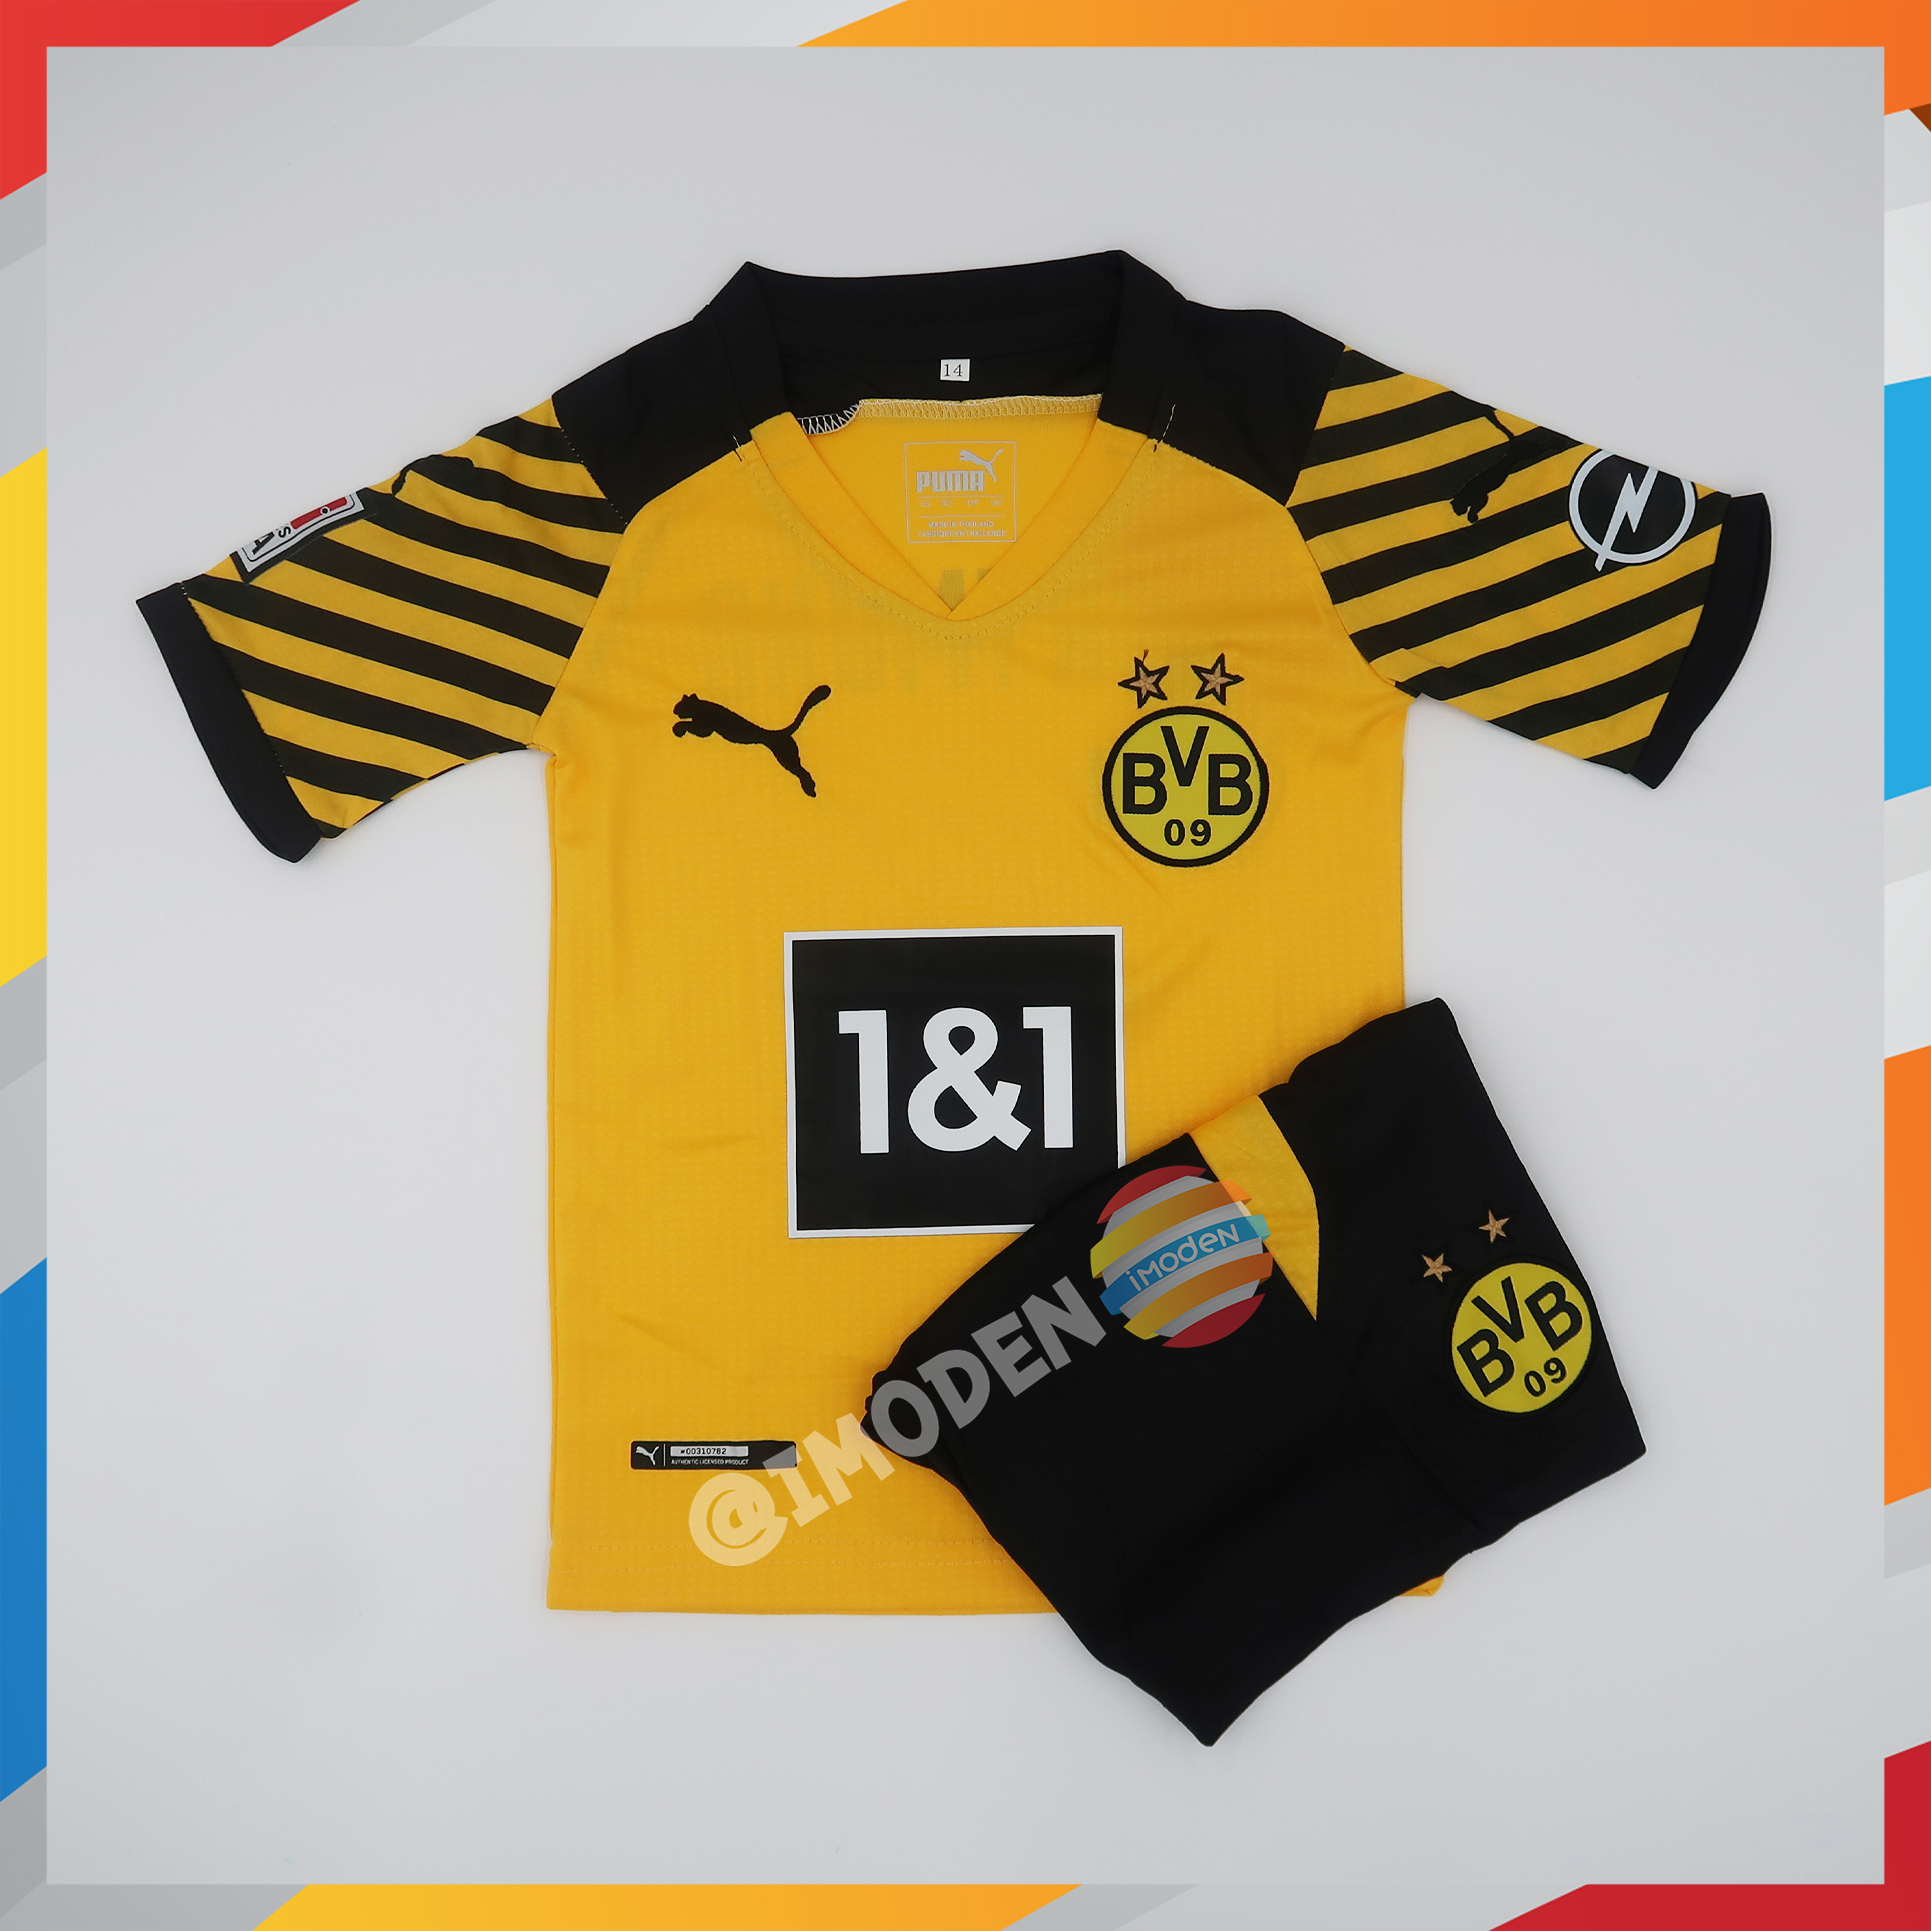 ⚡มาใหม่ ชุดฟุตบอล IMODEN เสื้อบอล เด็ก ได้ทั้งชุด แขนสั้น ดอร์ทมุนด์ สีเหลือง DOT3221